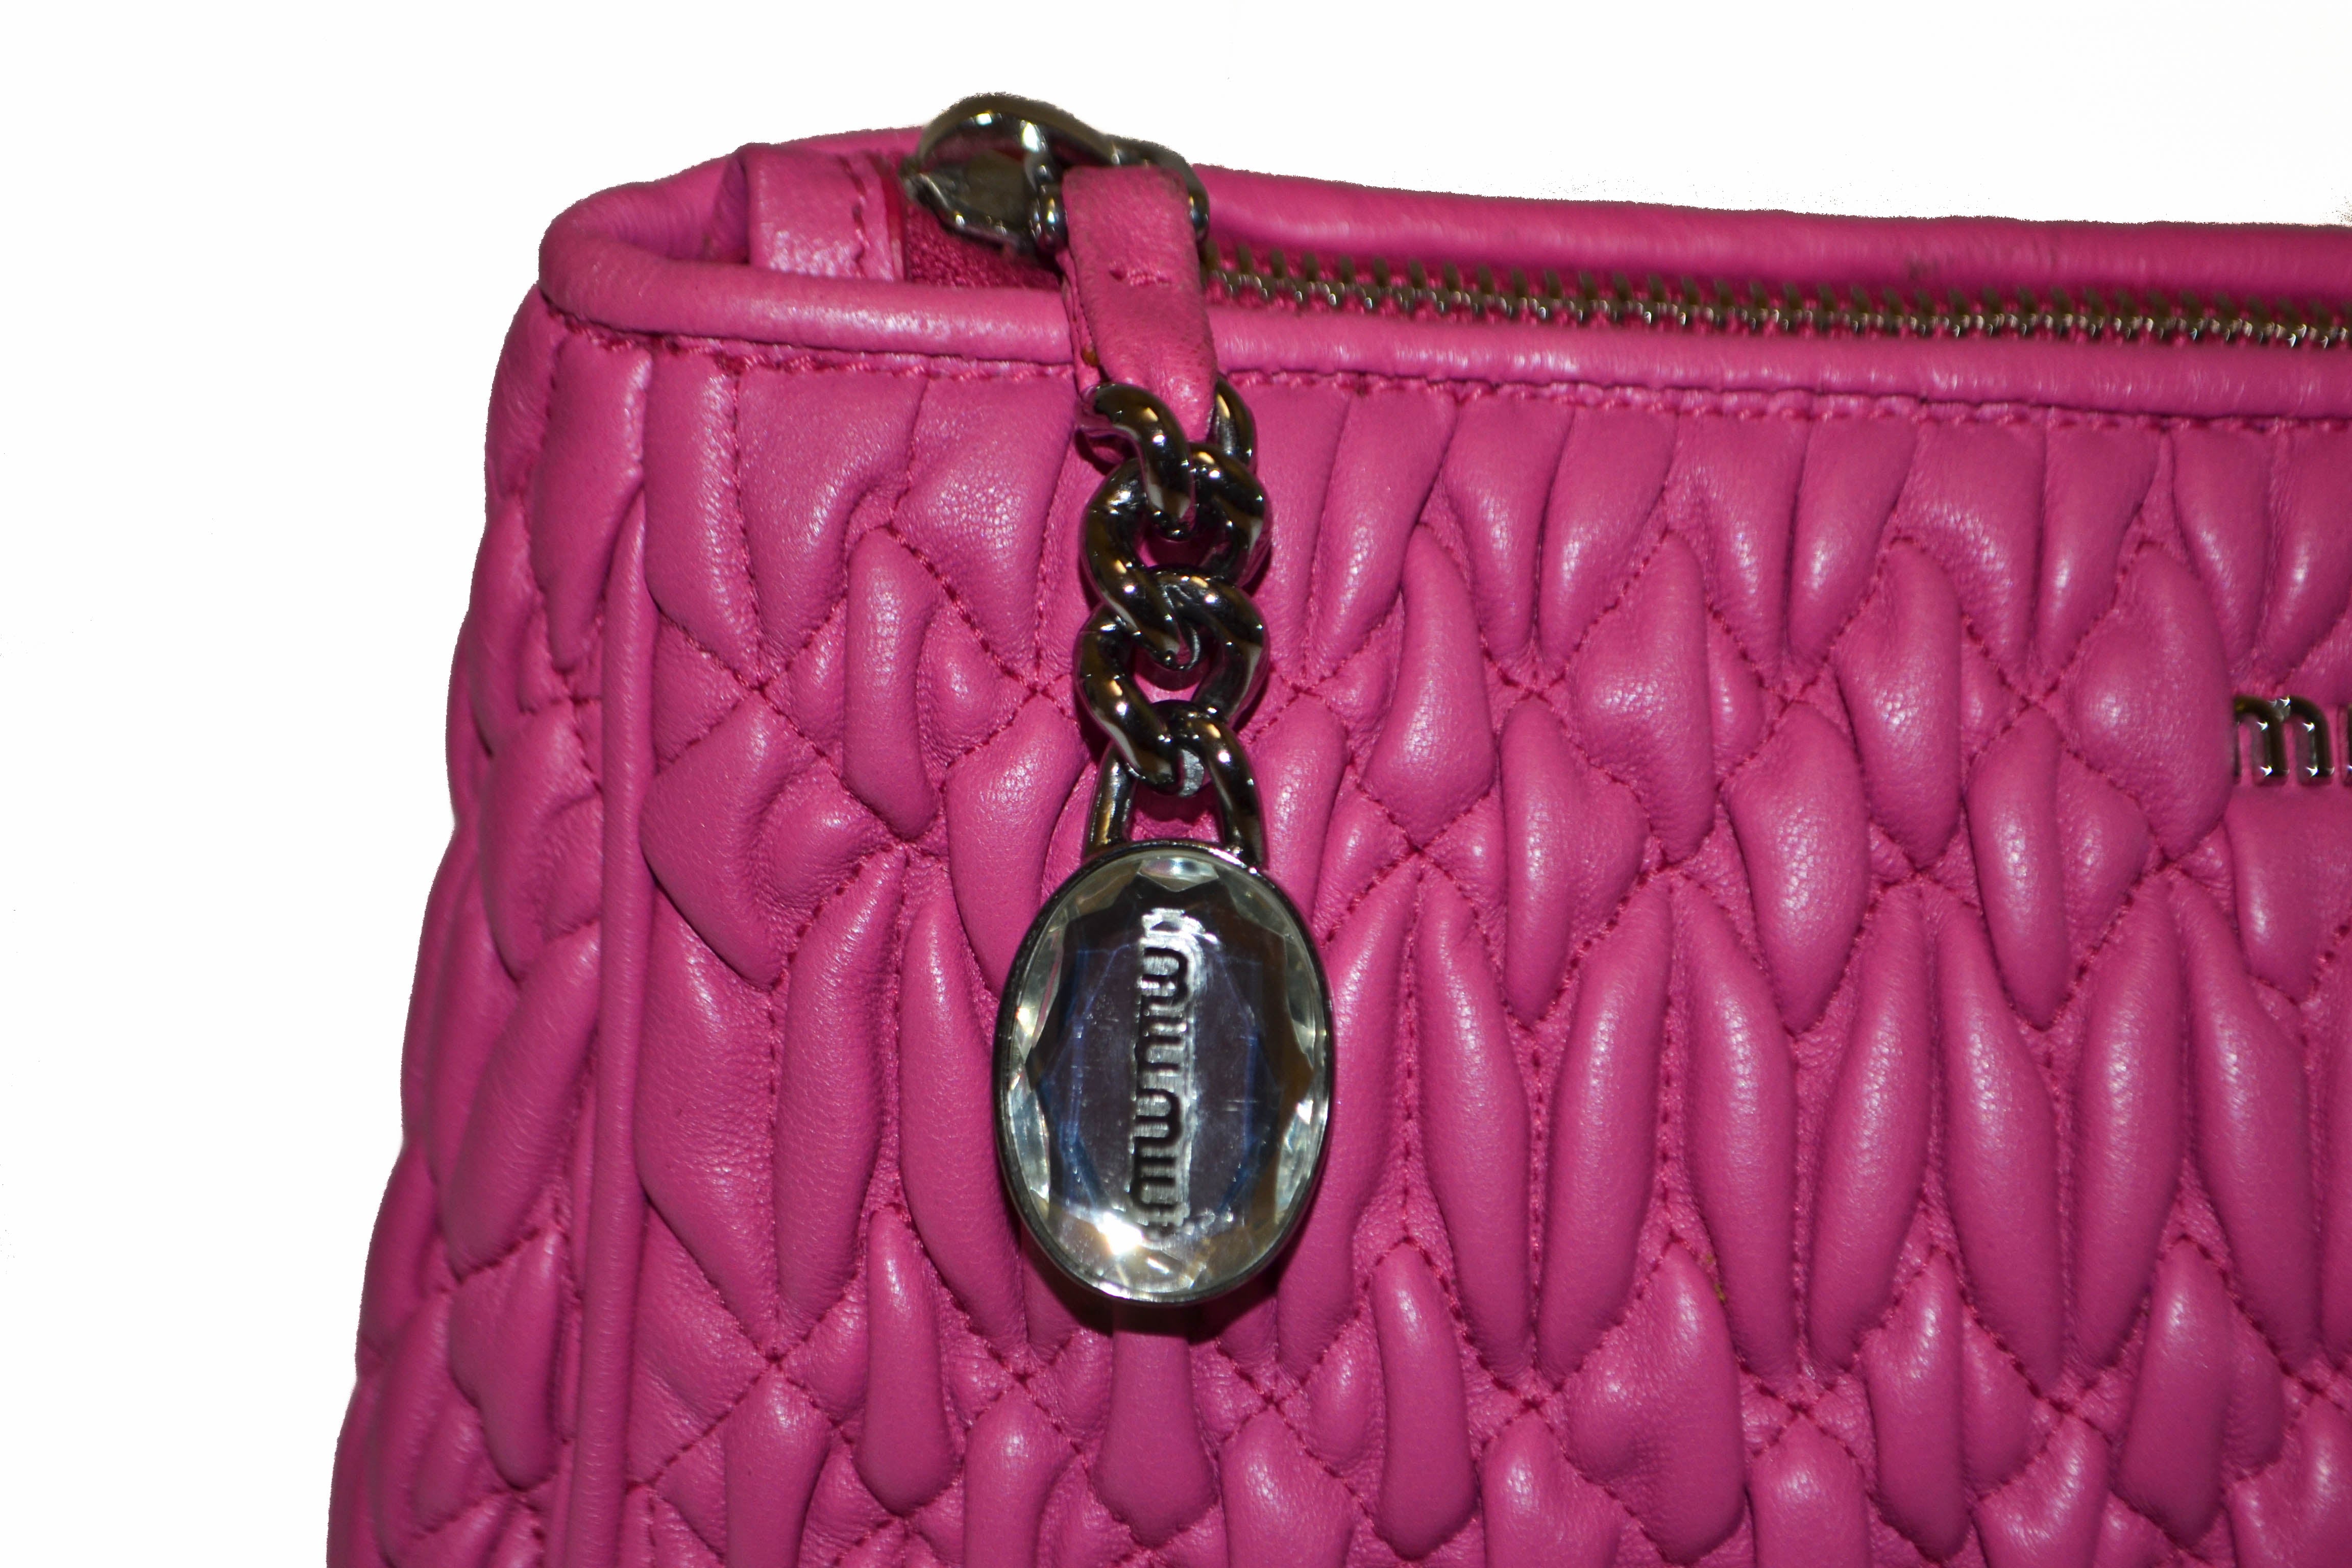 Authentic Miu Miu Pink Matelasse Nappa Leather Clutch